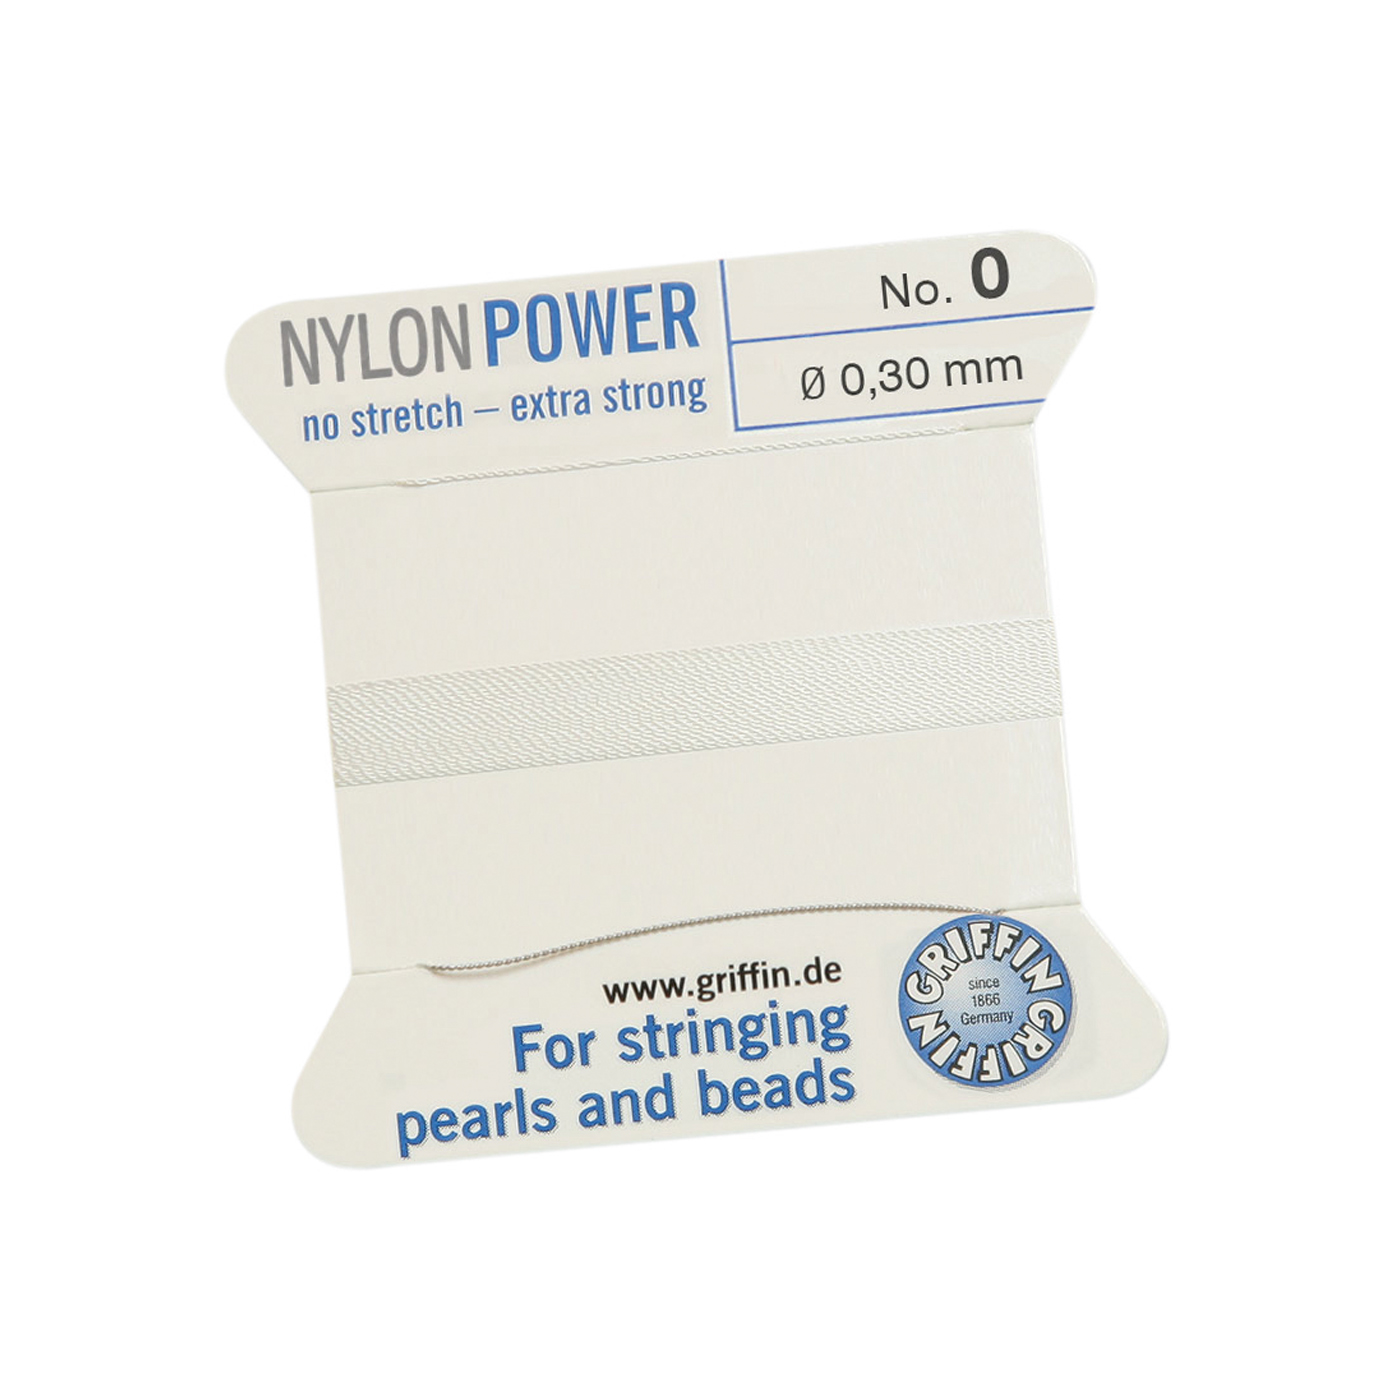 Bead Cord NylonPower, White, No. 0 - 2 m